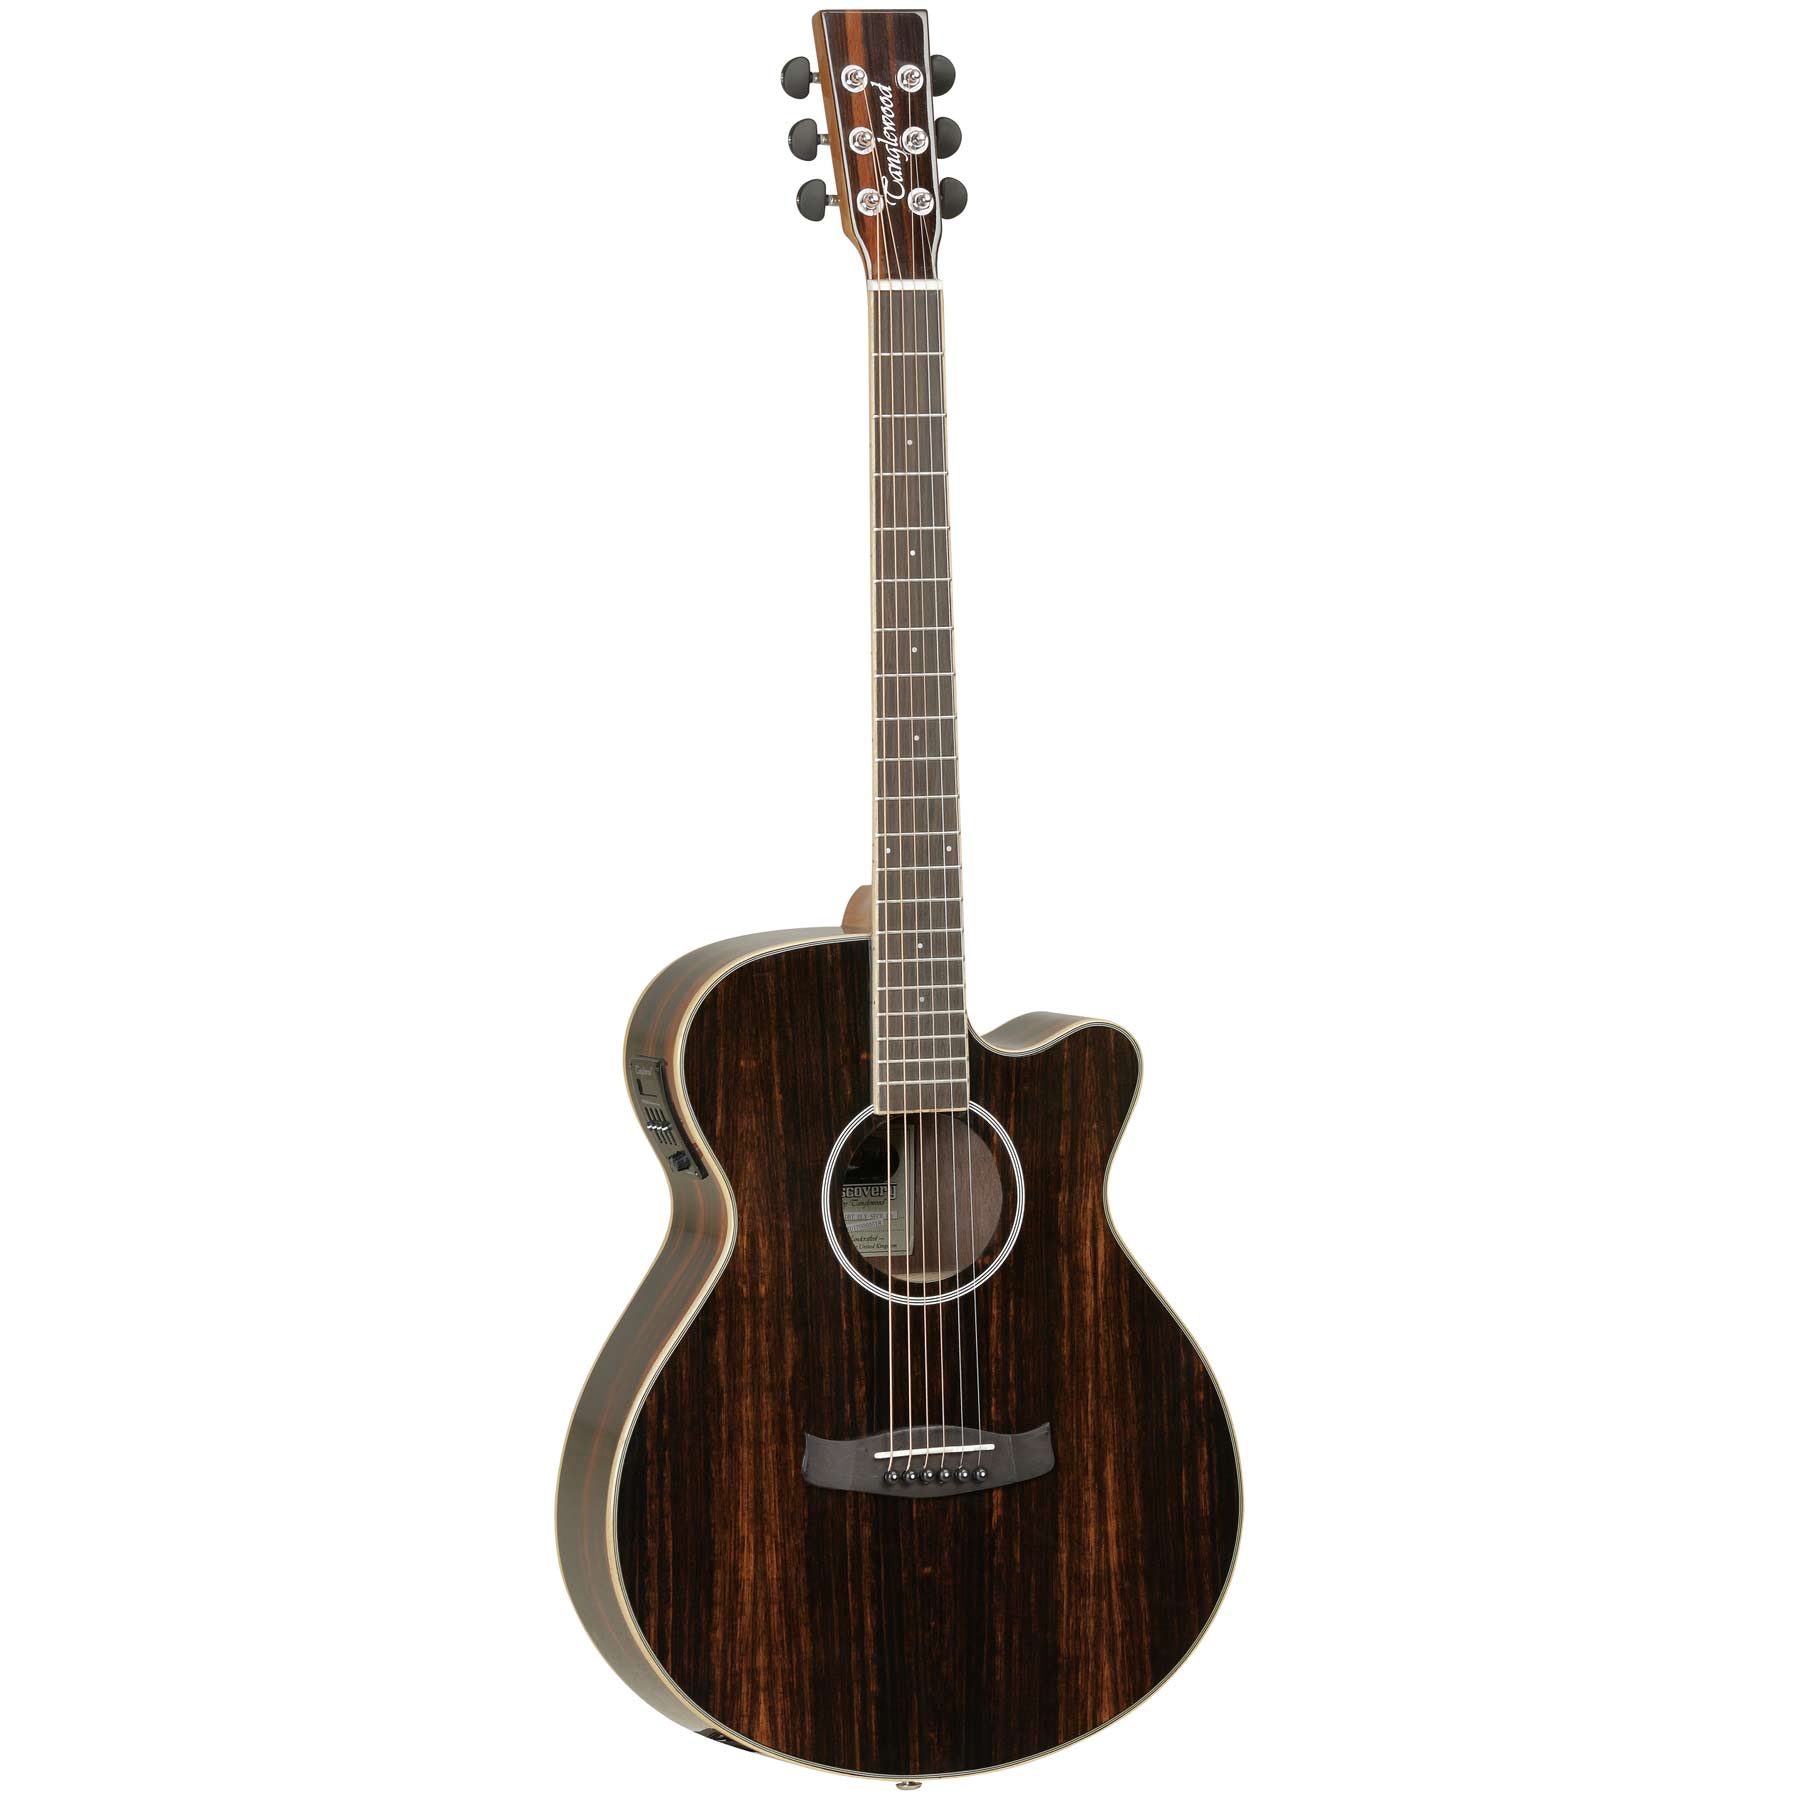 Comprar Guitarra Electroacustica de Calidad al mejor precio en Prieto Msica